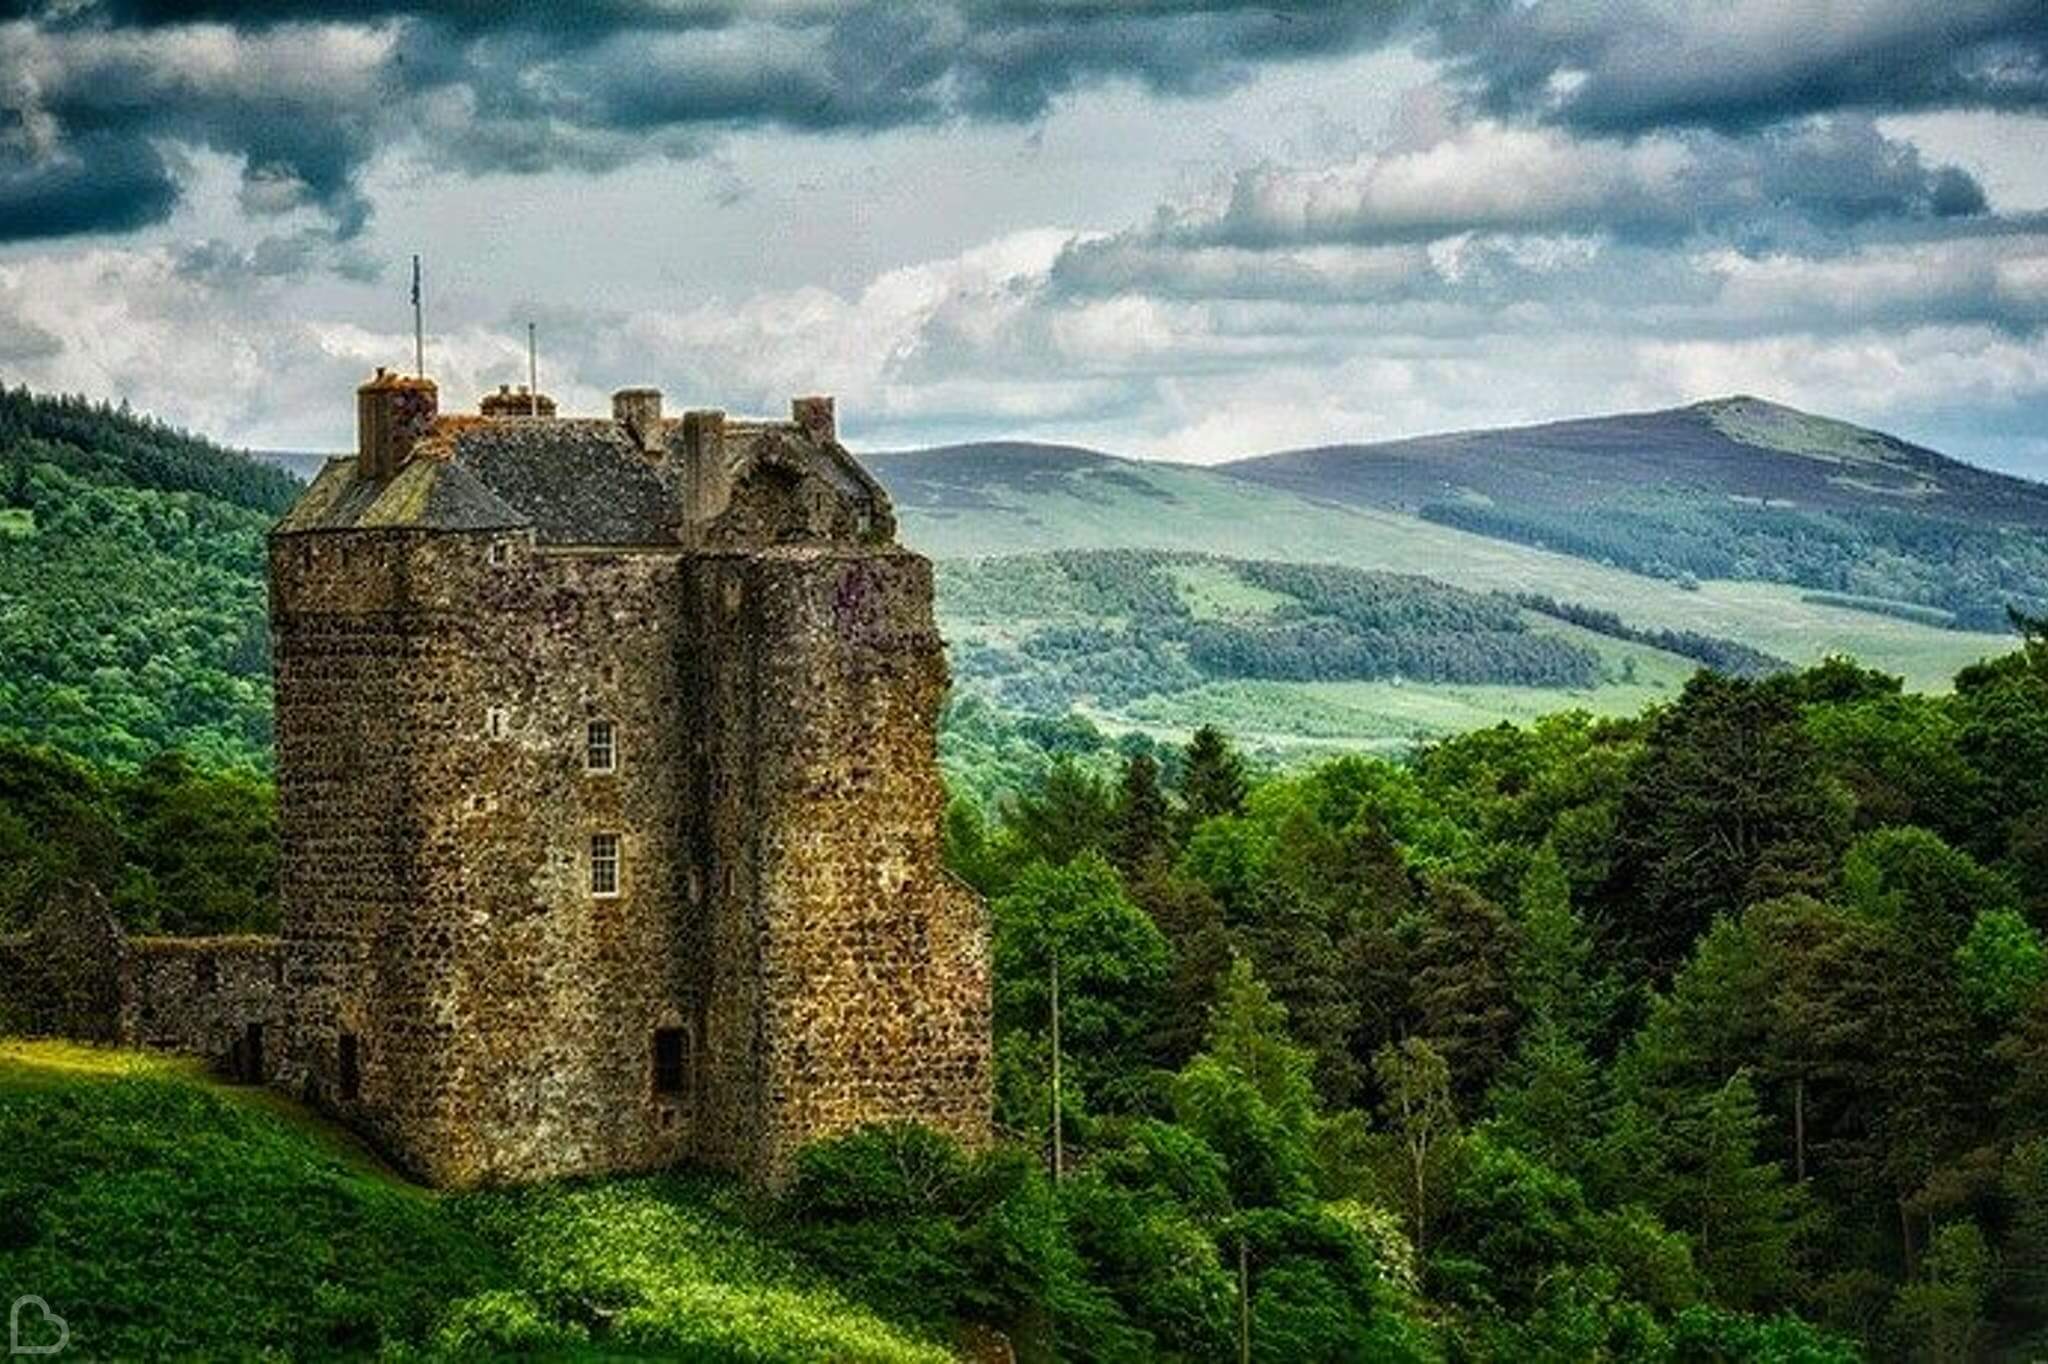 neidpath castle in scotland